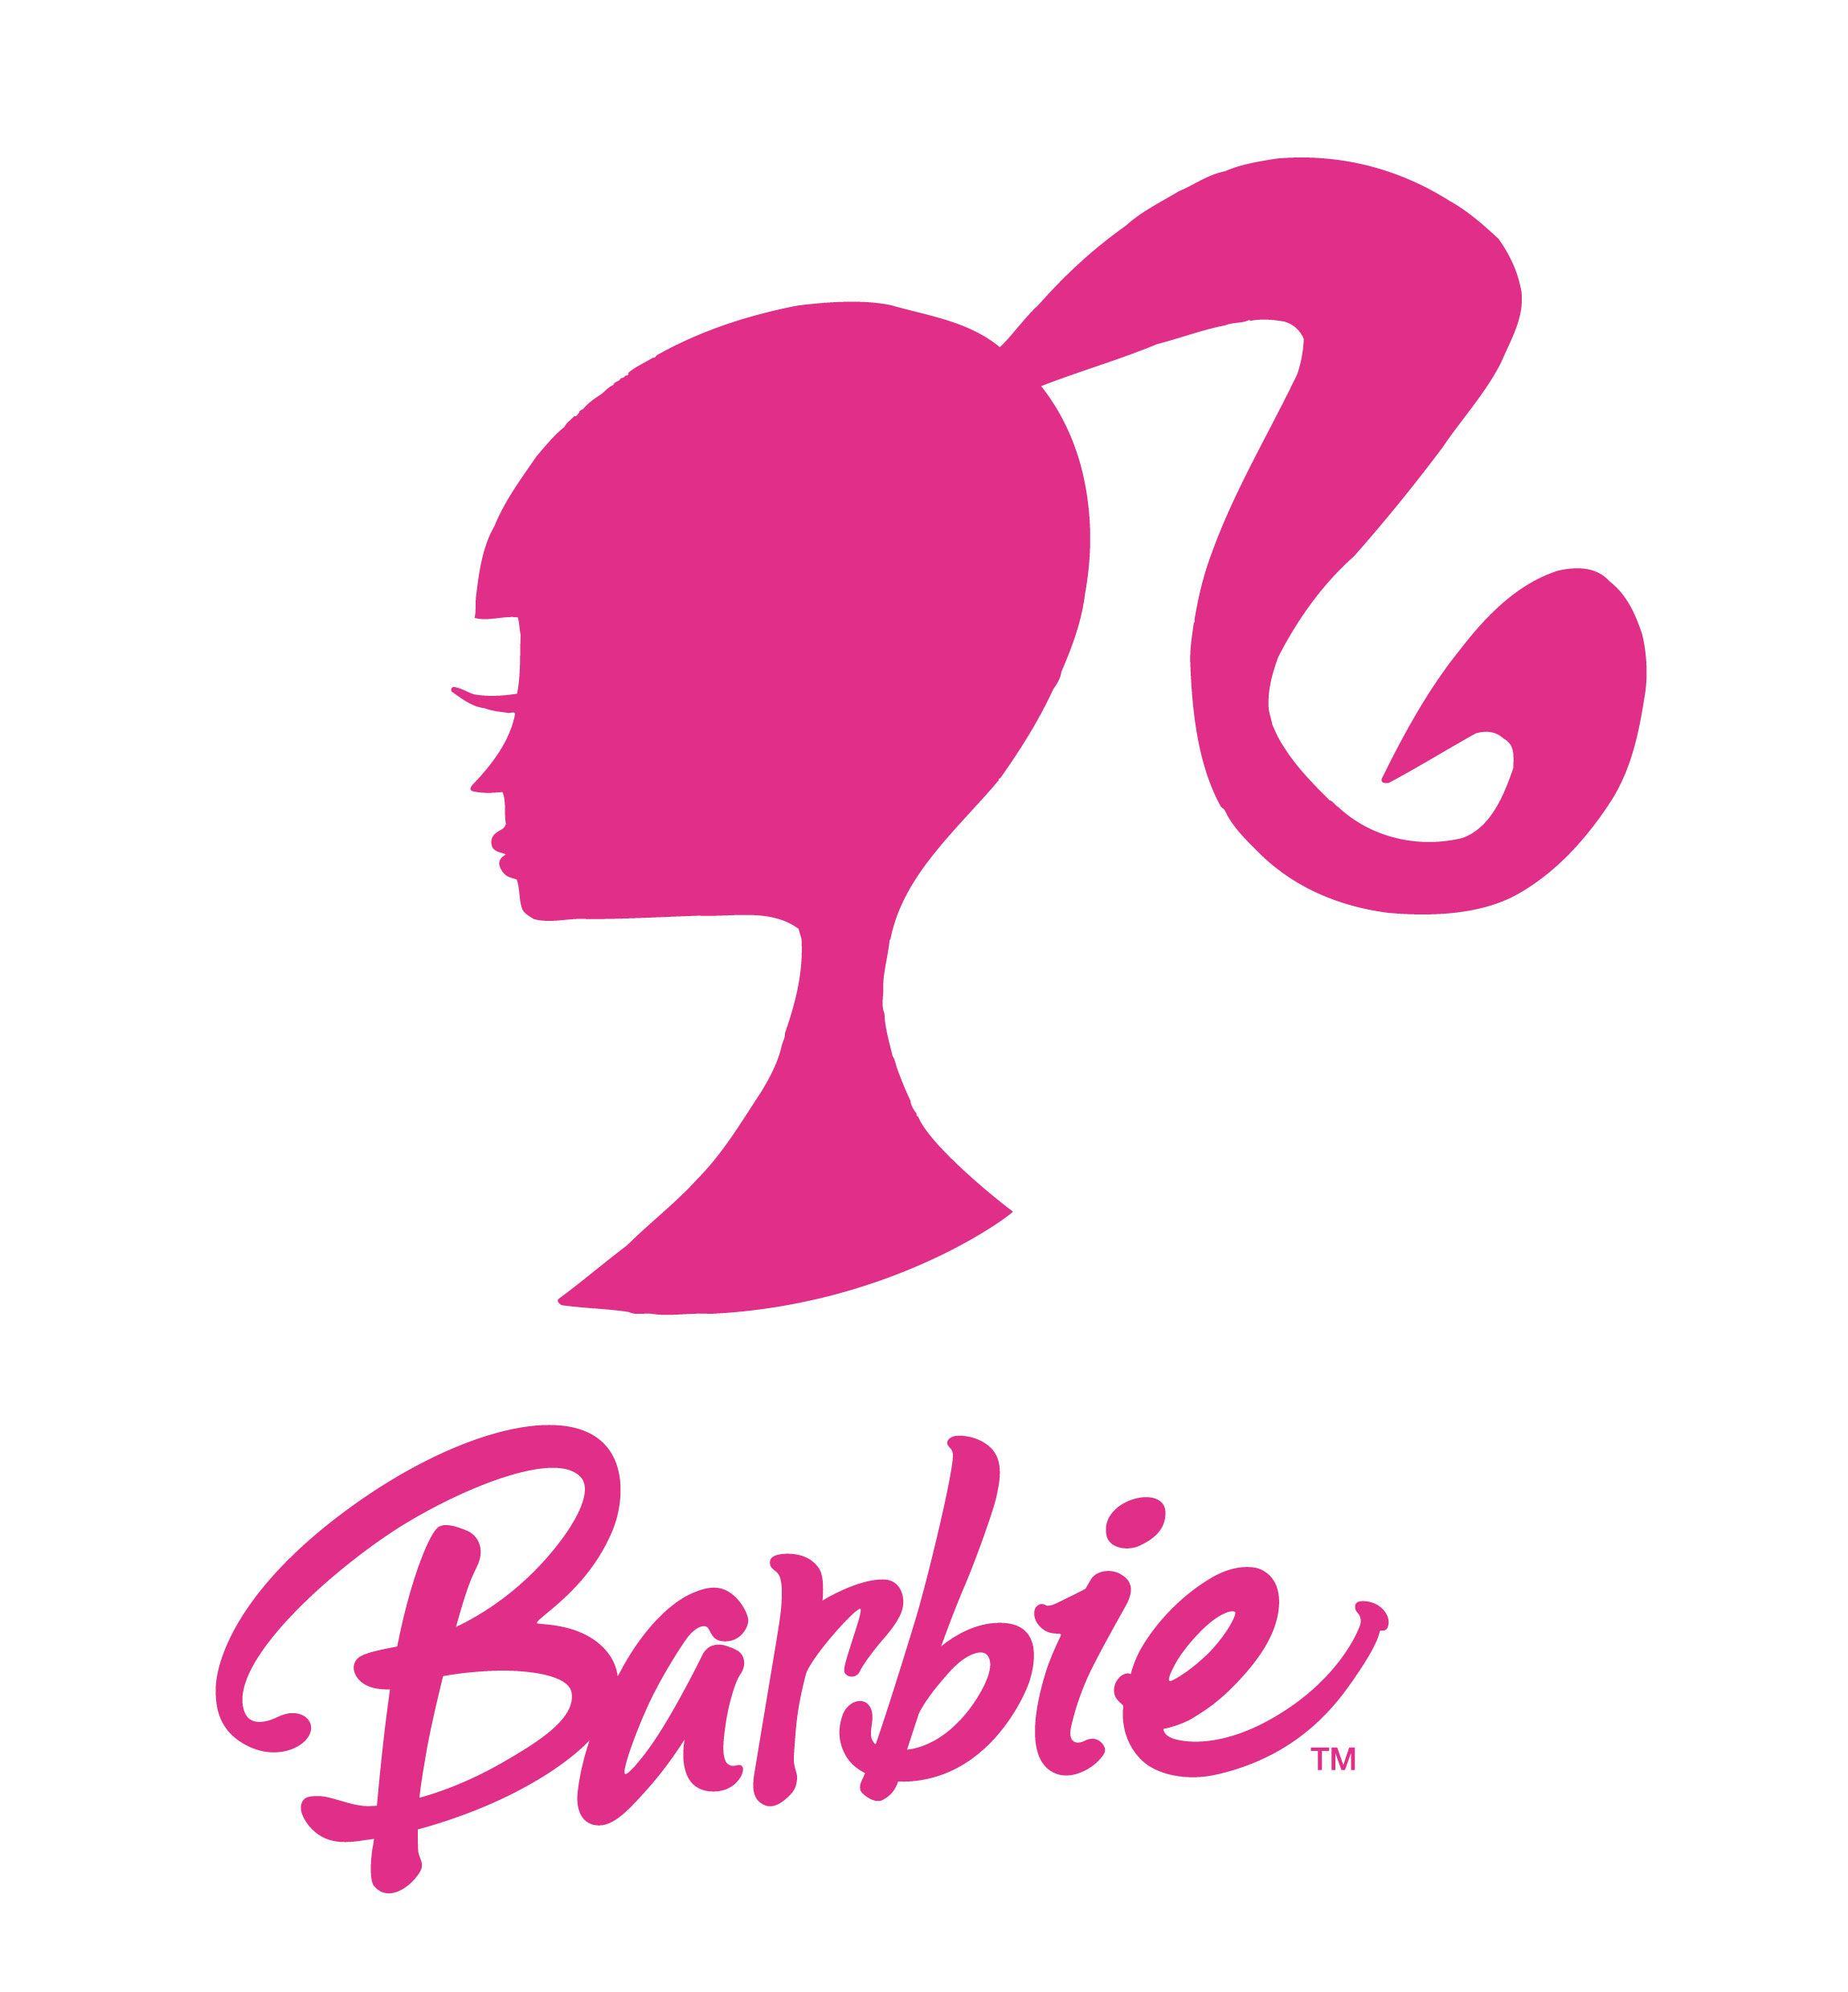 Barbie.com Logo - Barbie Logo | Pretty in Pink | Barbie, Barbie dolls, Dolls